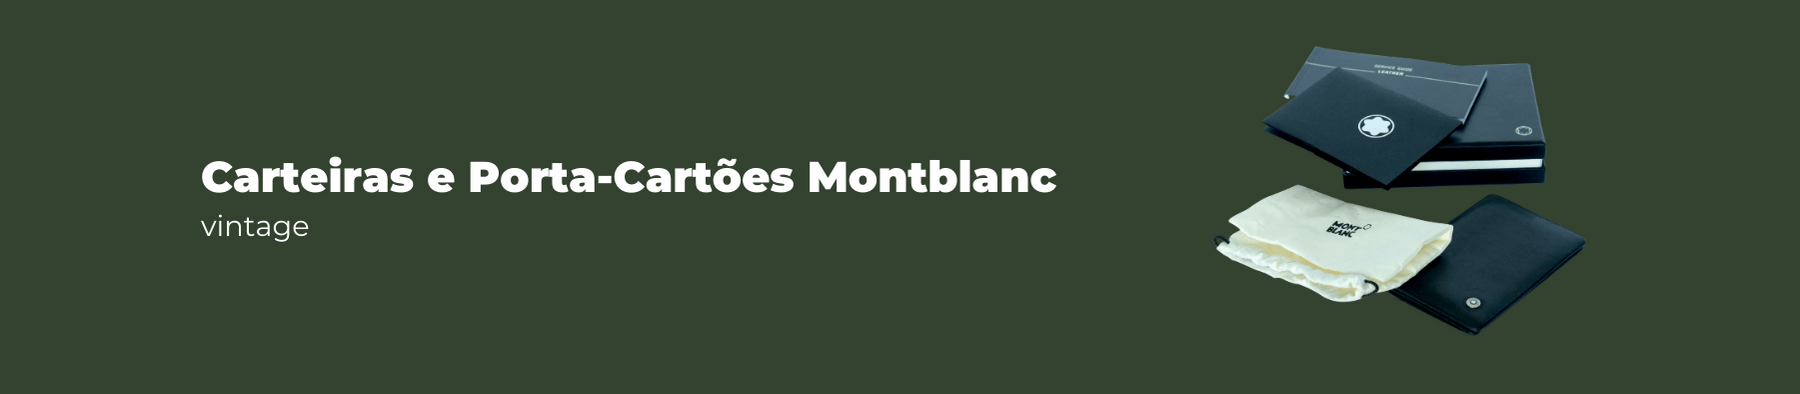 Carteiras e Porta-Cartões Vintage Montblanc